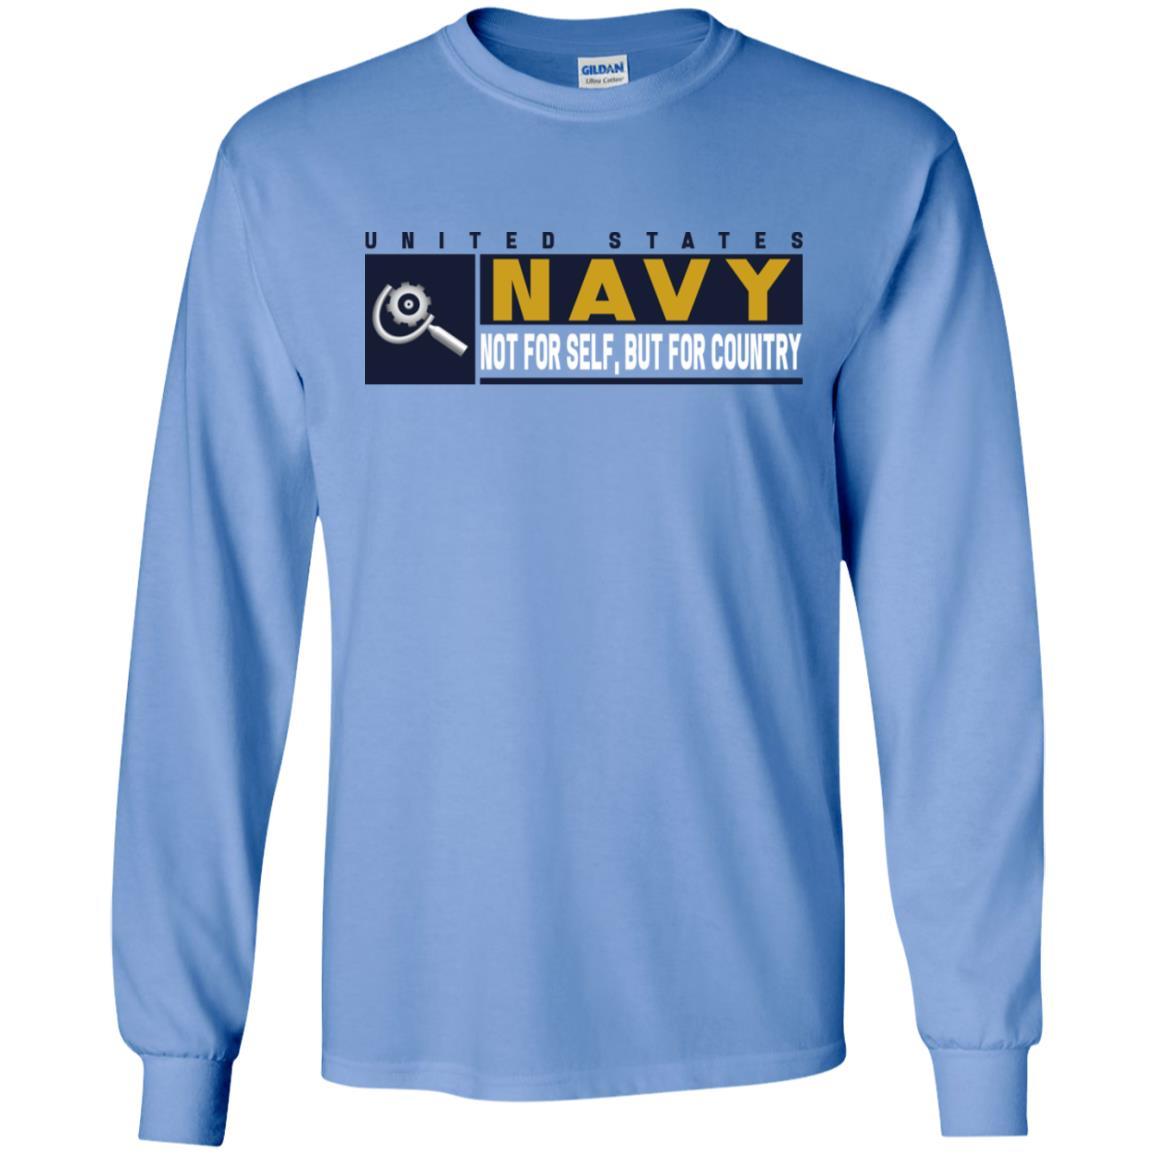 U.S Navy Machinery repairman Navy MR- Not for self Long Sleeve - Pullover Hoodie-TShirt-Navy-Veterans Nation